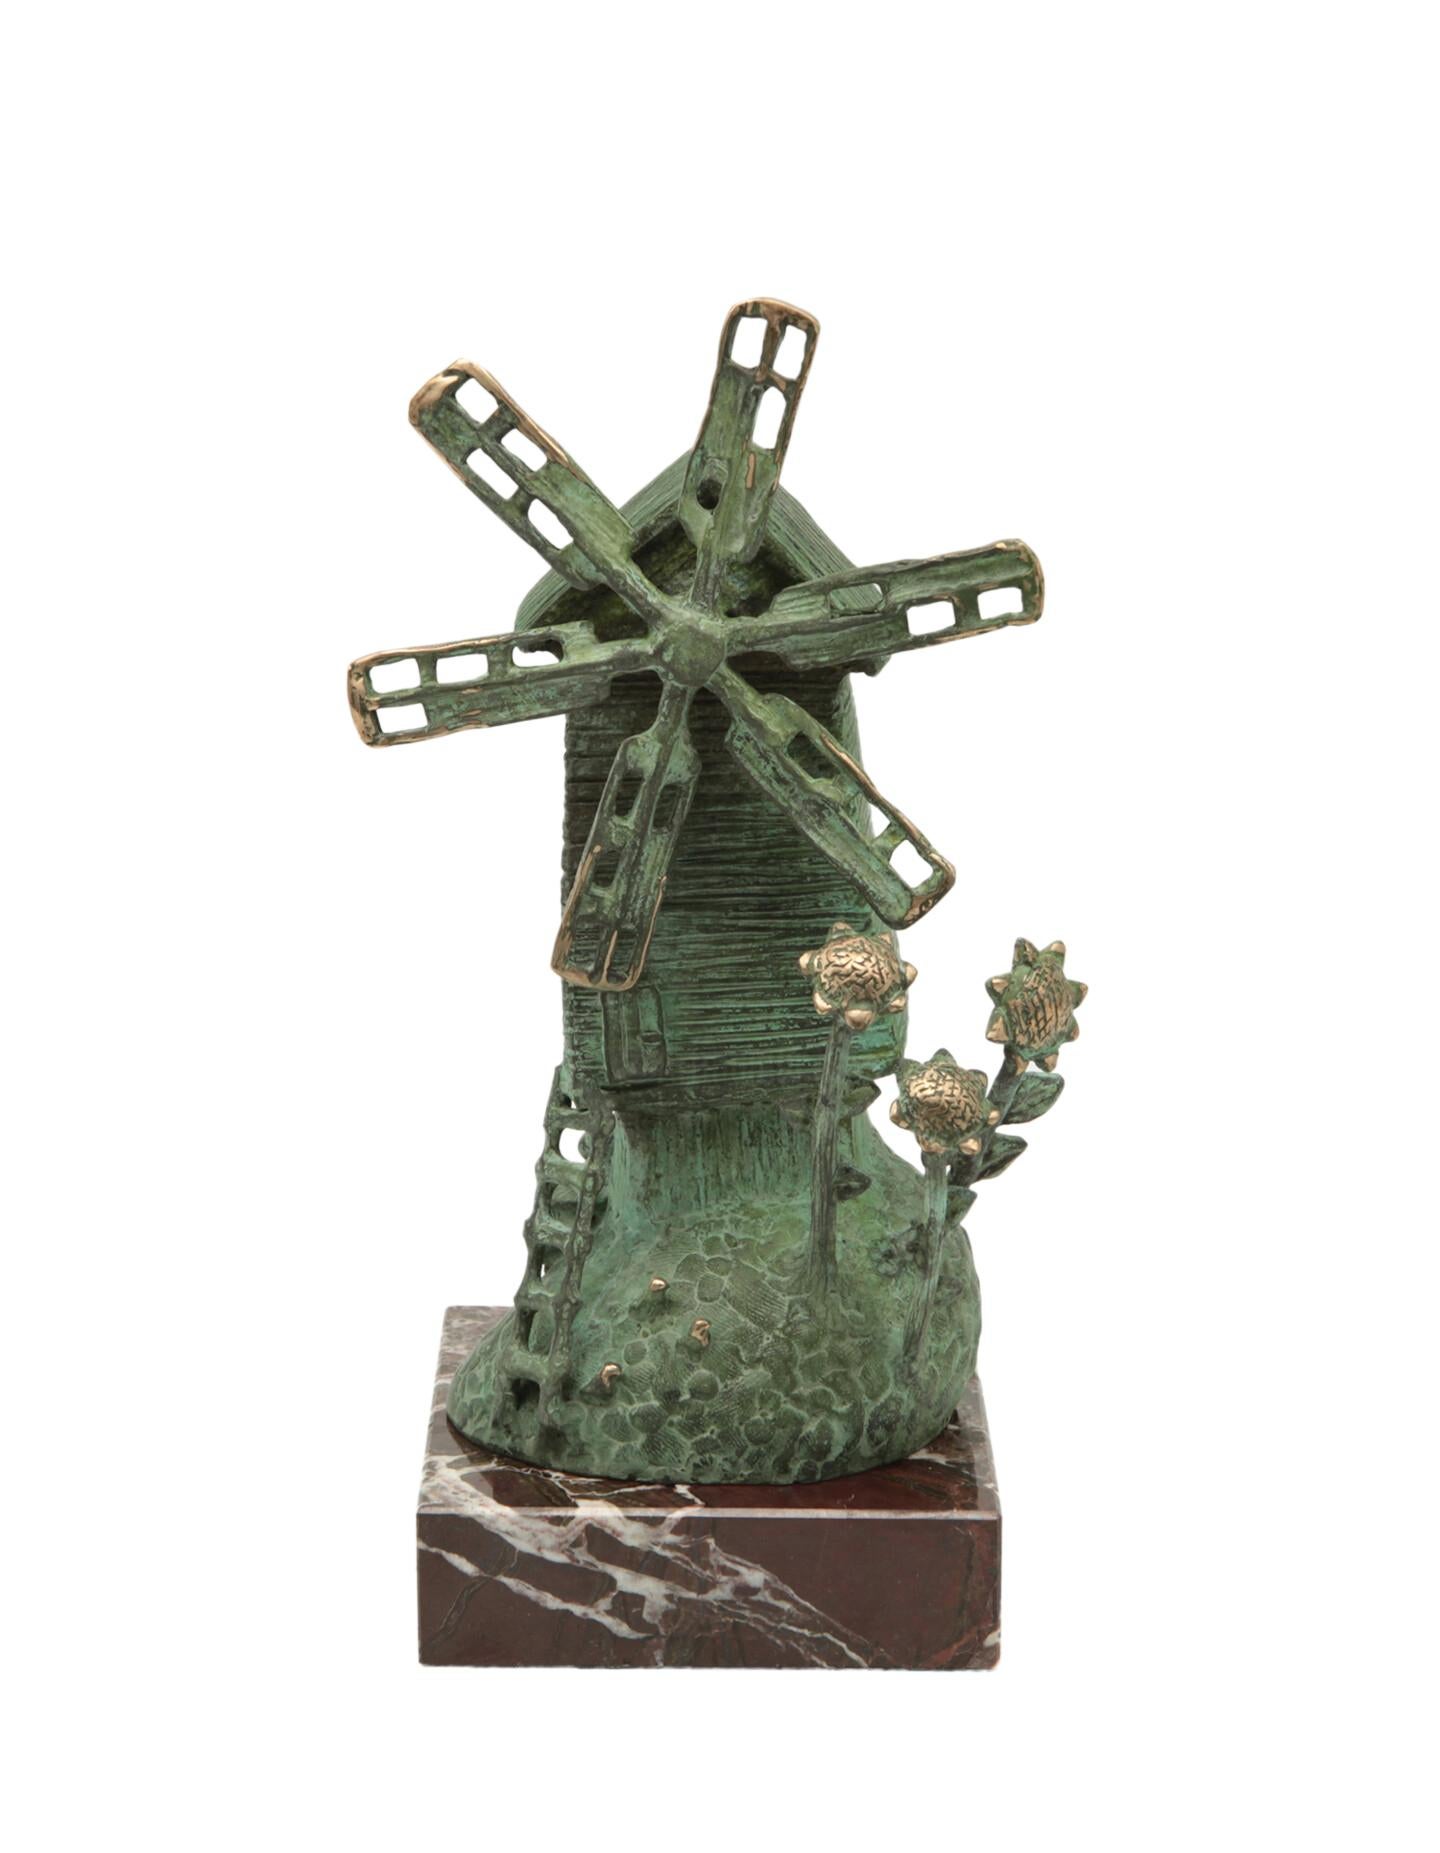 Volodymyr MYKYTENKO Figurative Sculpture - National Traditions 2, Bronze Sculpture by Volodymyr Mykytenko, 2012